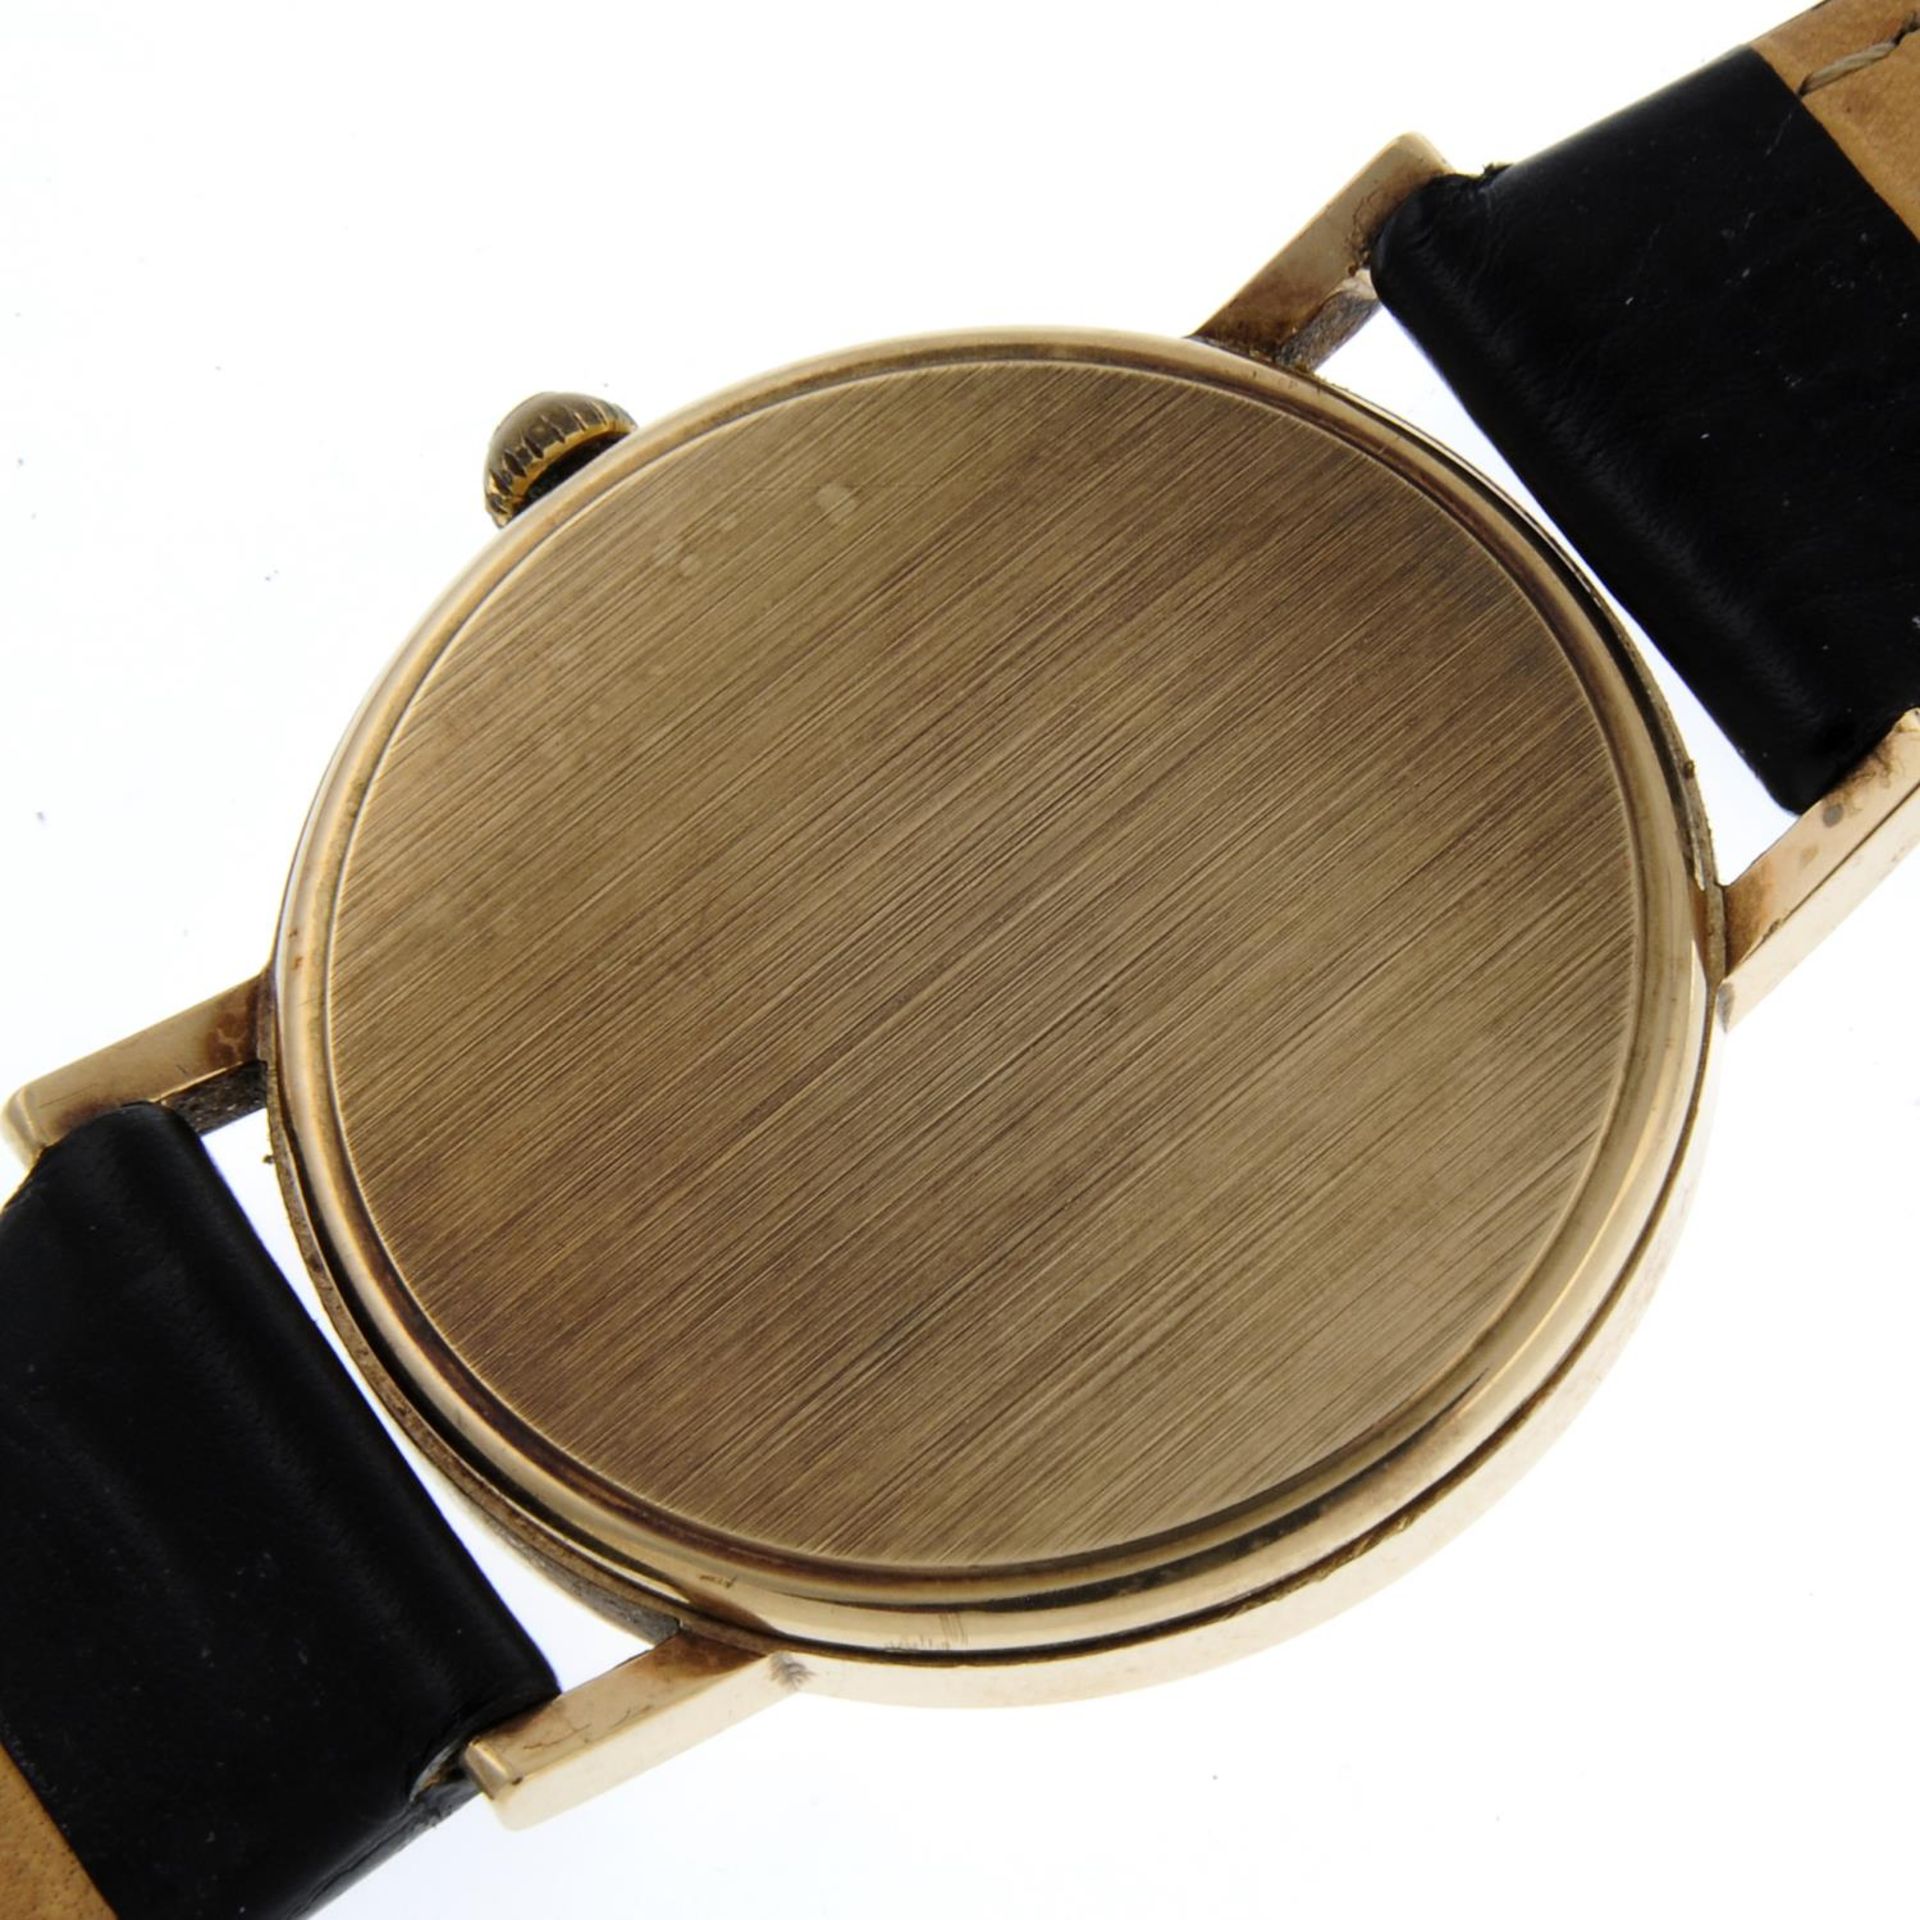 GARRARD - a gentleman's wrist watch. - Image 5 of 6